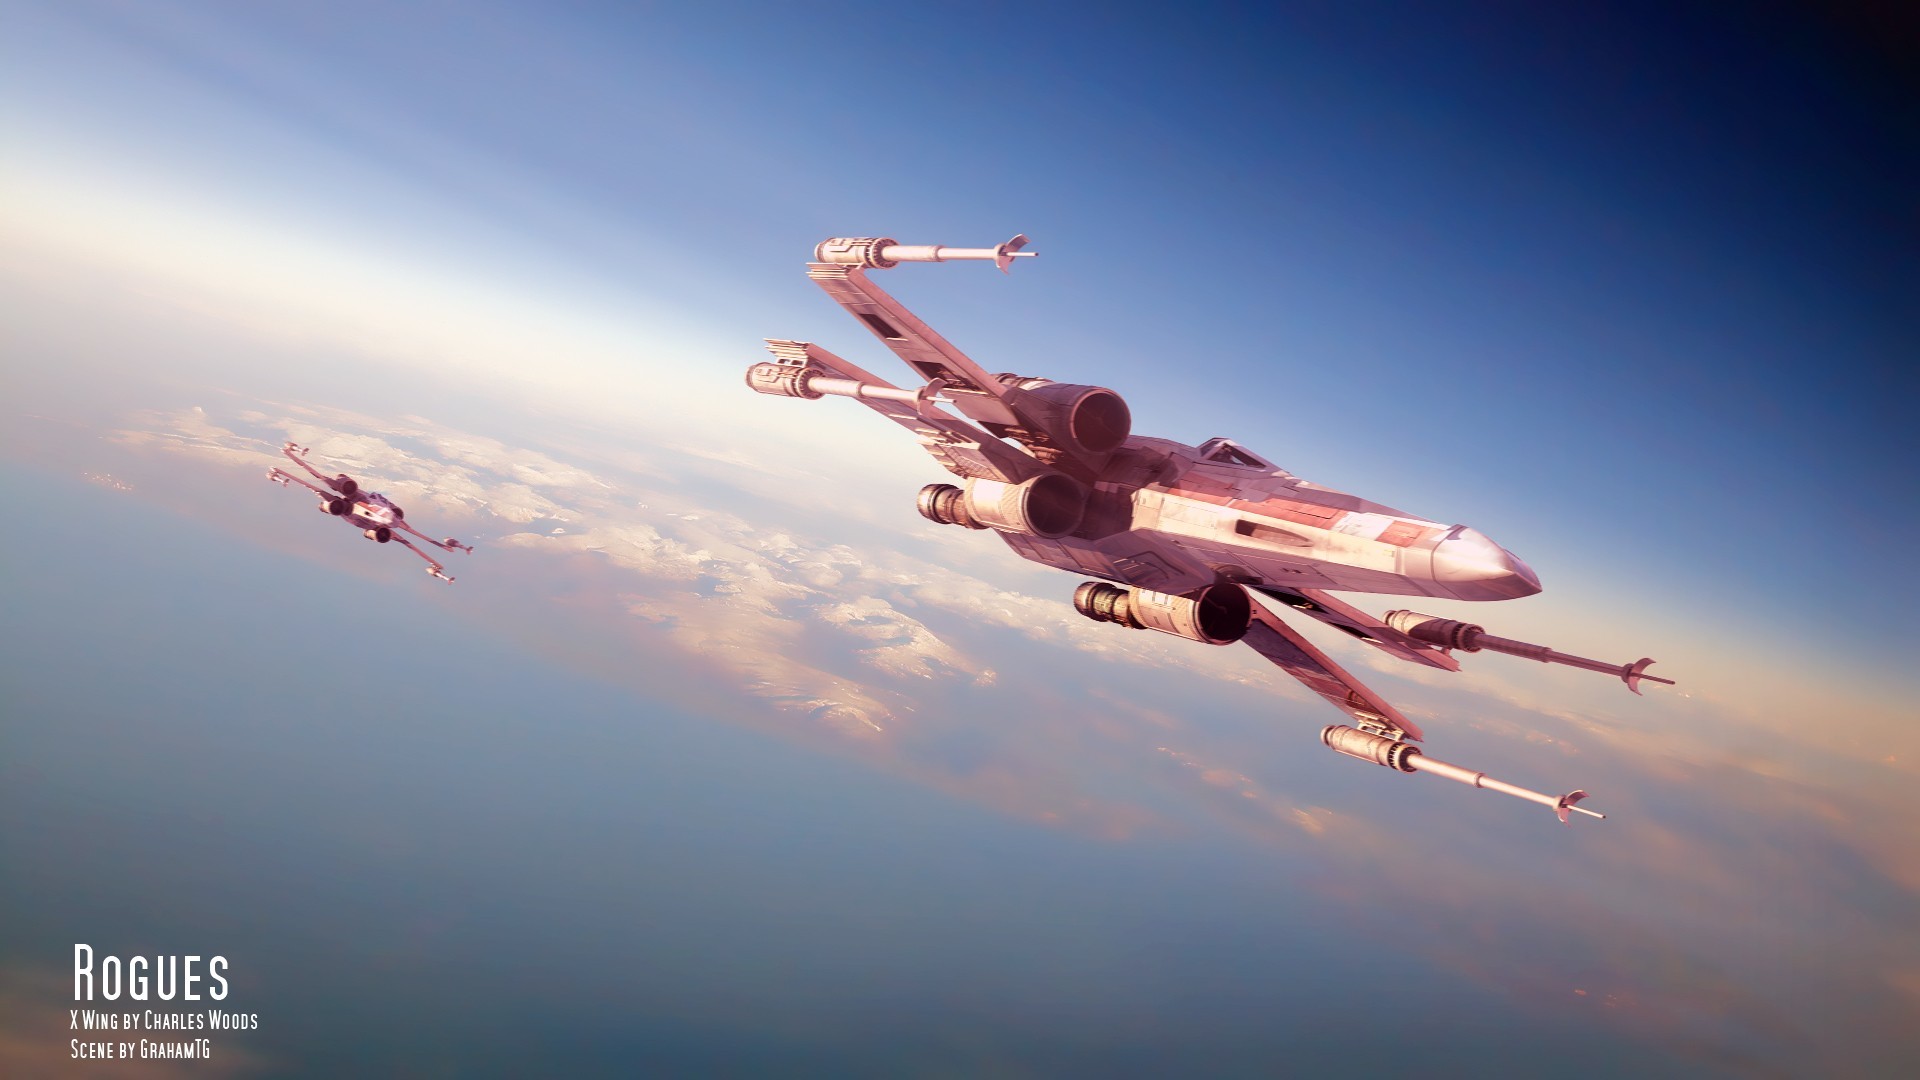 Bộ sưu tập hình nền Sky X Wing sẽ đem đến cho bạn những trải nghiệm phiêu lưu tuyệt vời trên không trung. Những hình ảnh cực kỳ đẹp mắt về chiếc phi cơ X Wing cùng đám mây sẽ khiến bạn có cảm giác như mình đang trực tiếp hiện diện trên không trung.